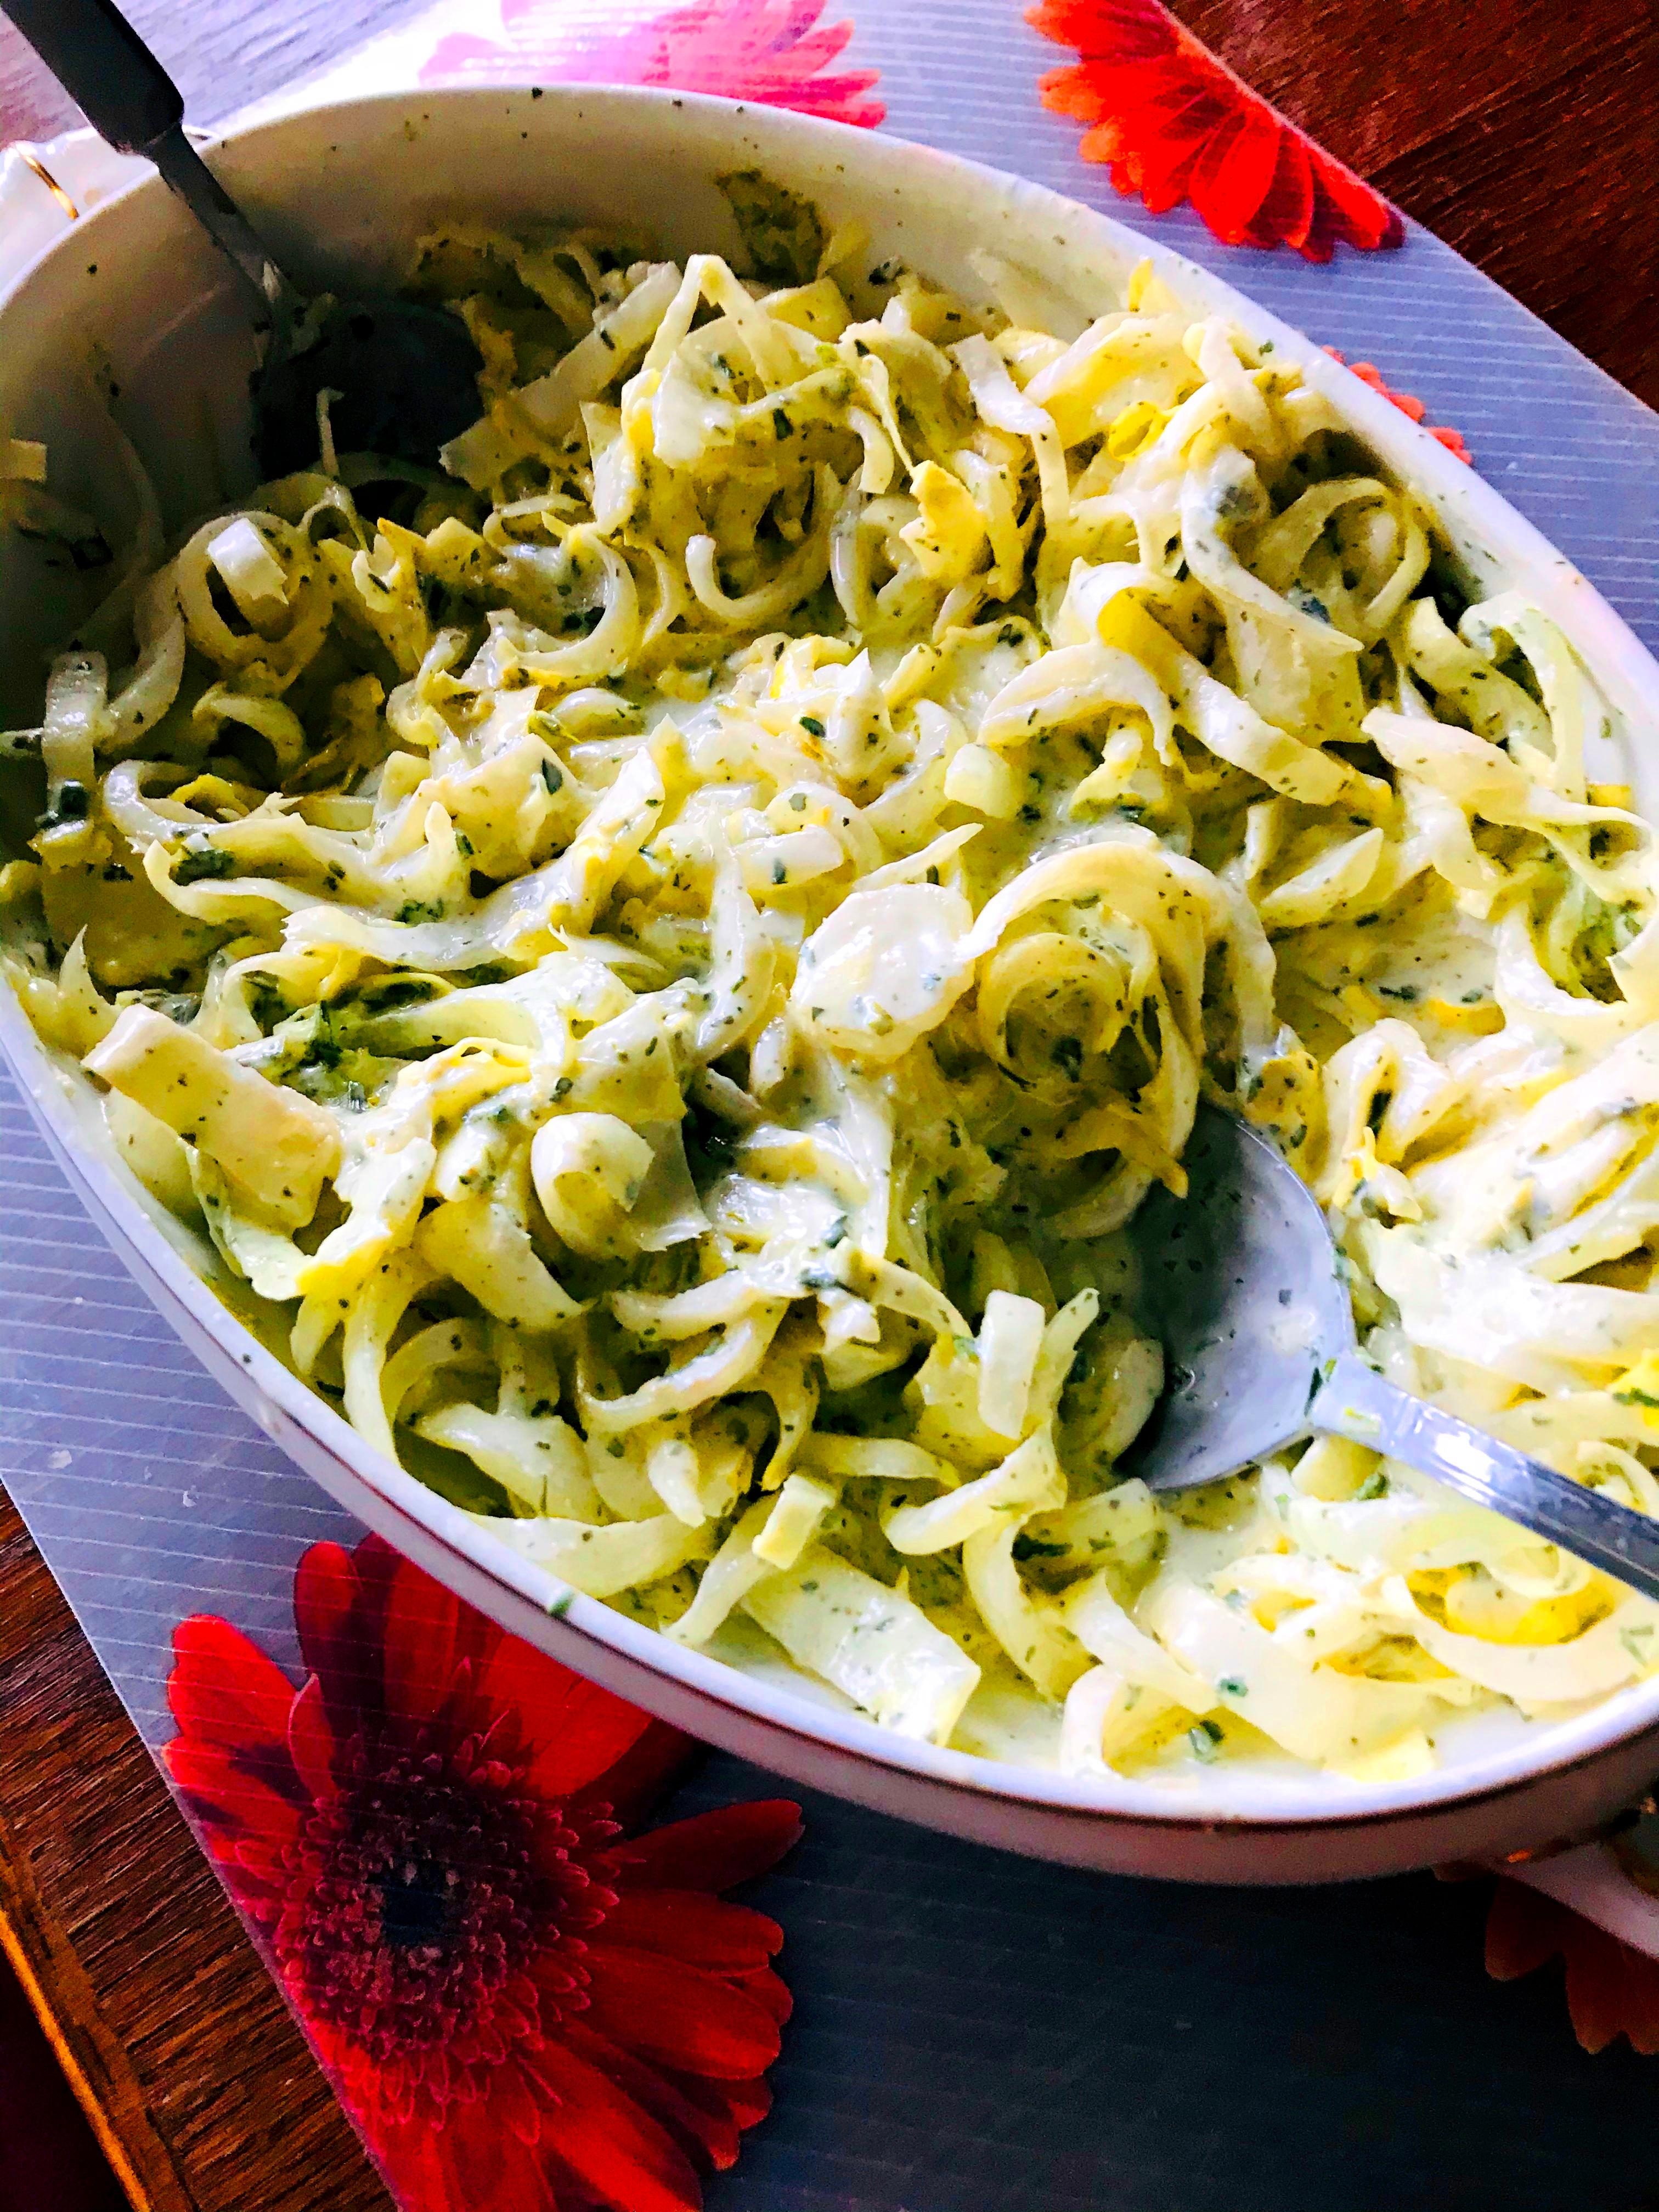 Chicoree Salat, ein tolles Herbst- und Wintergemüse! #gesund #salat  #yummy #essen #foodlover